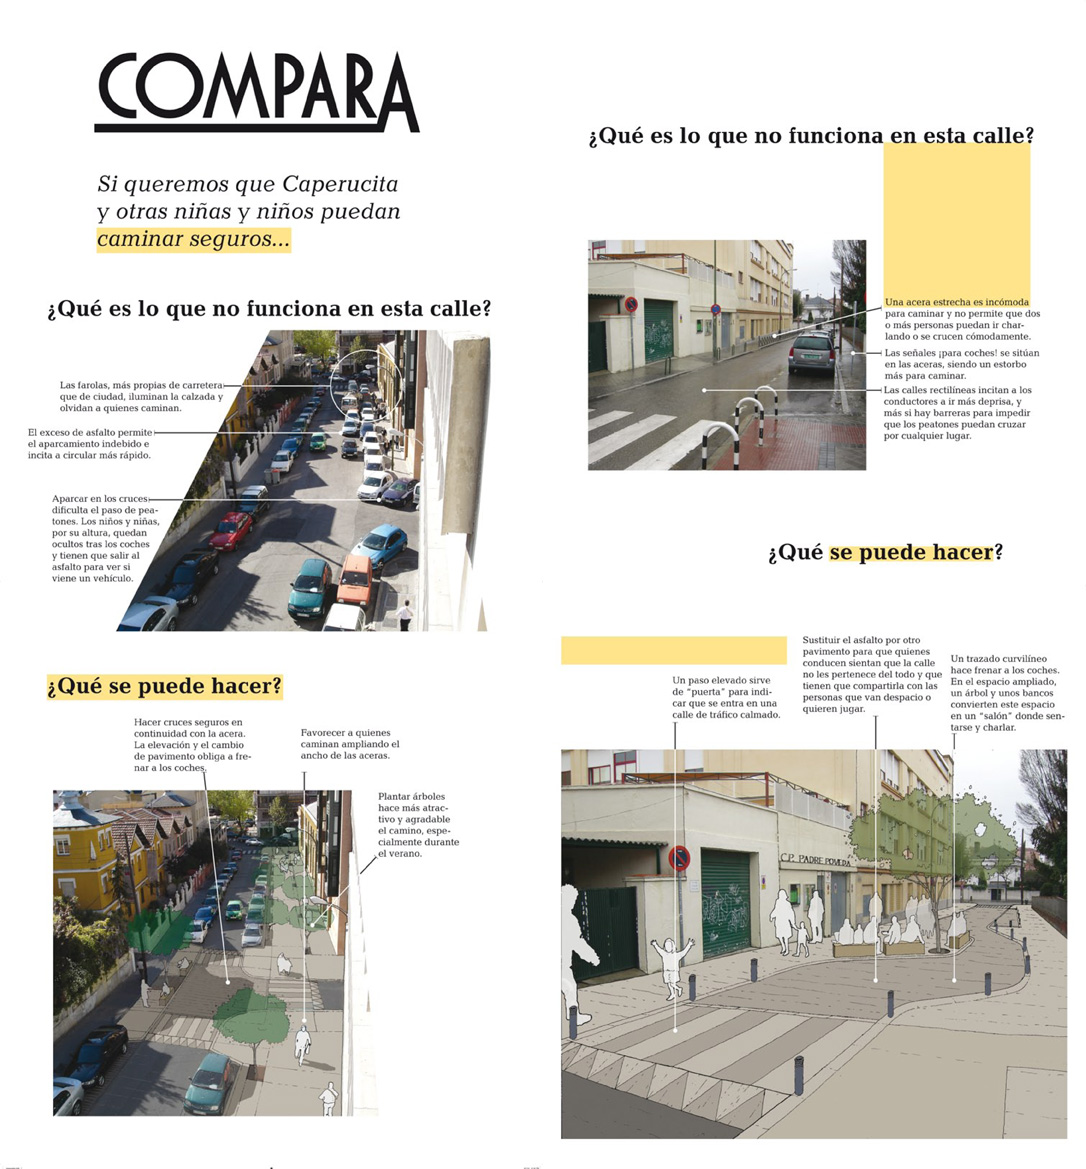 Panel 10 (complementa al panel 4). Frente al peligro real del tráfico, hay soluciones sencillas: pequeños cambios producen grandes mejoras en la seguridad de las calles y en su aspecto estético.